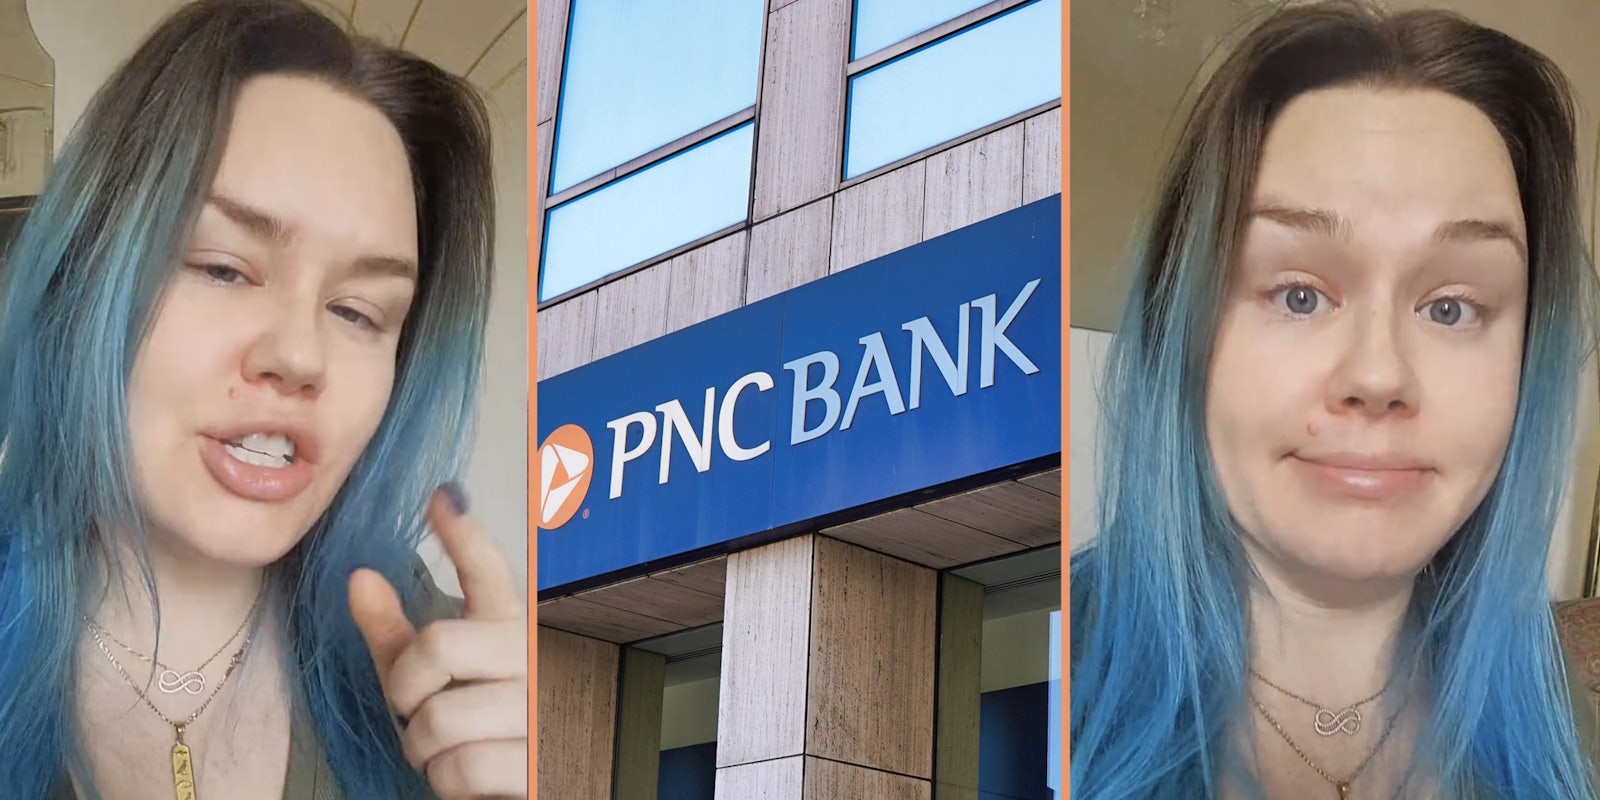 Womann talking(l+r), PNC Bank (c)